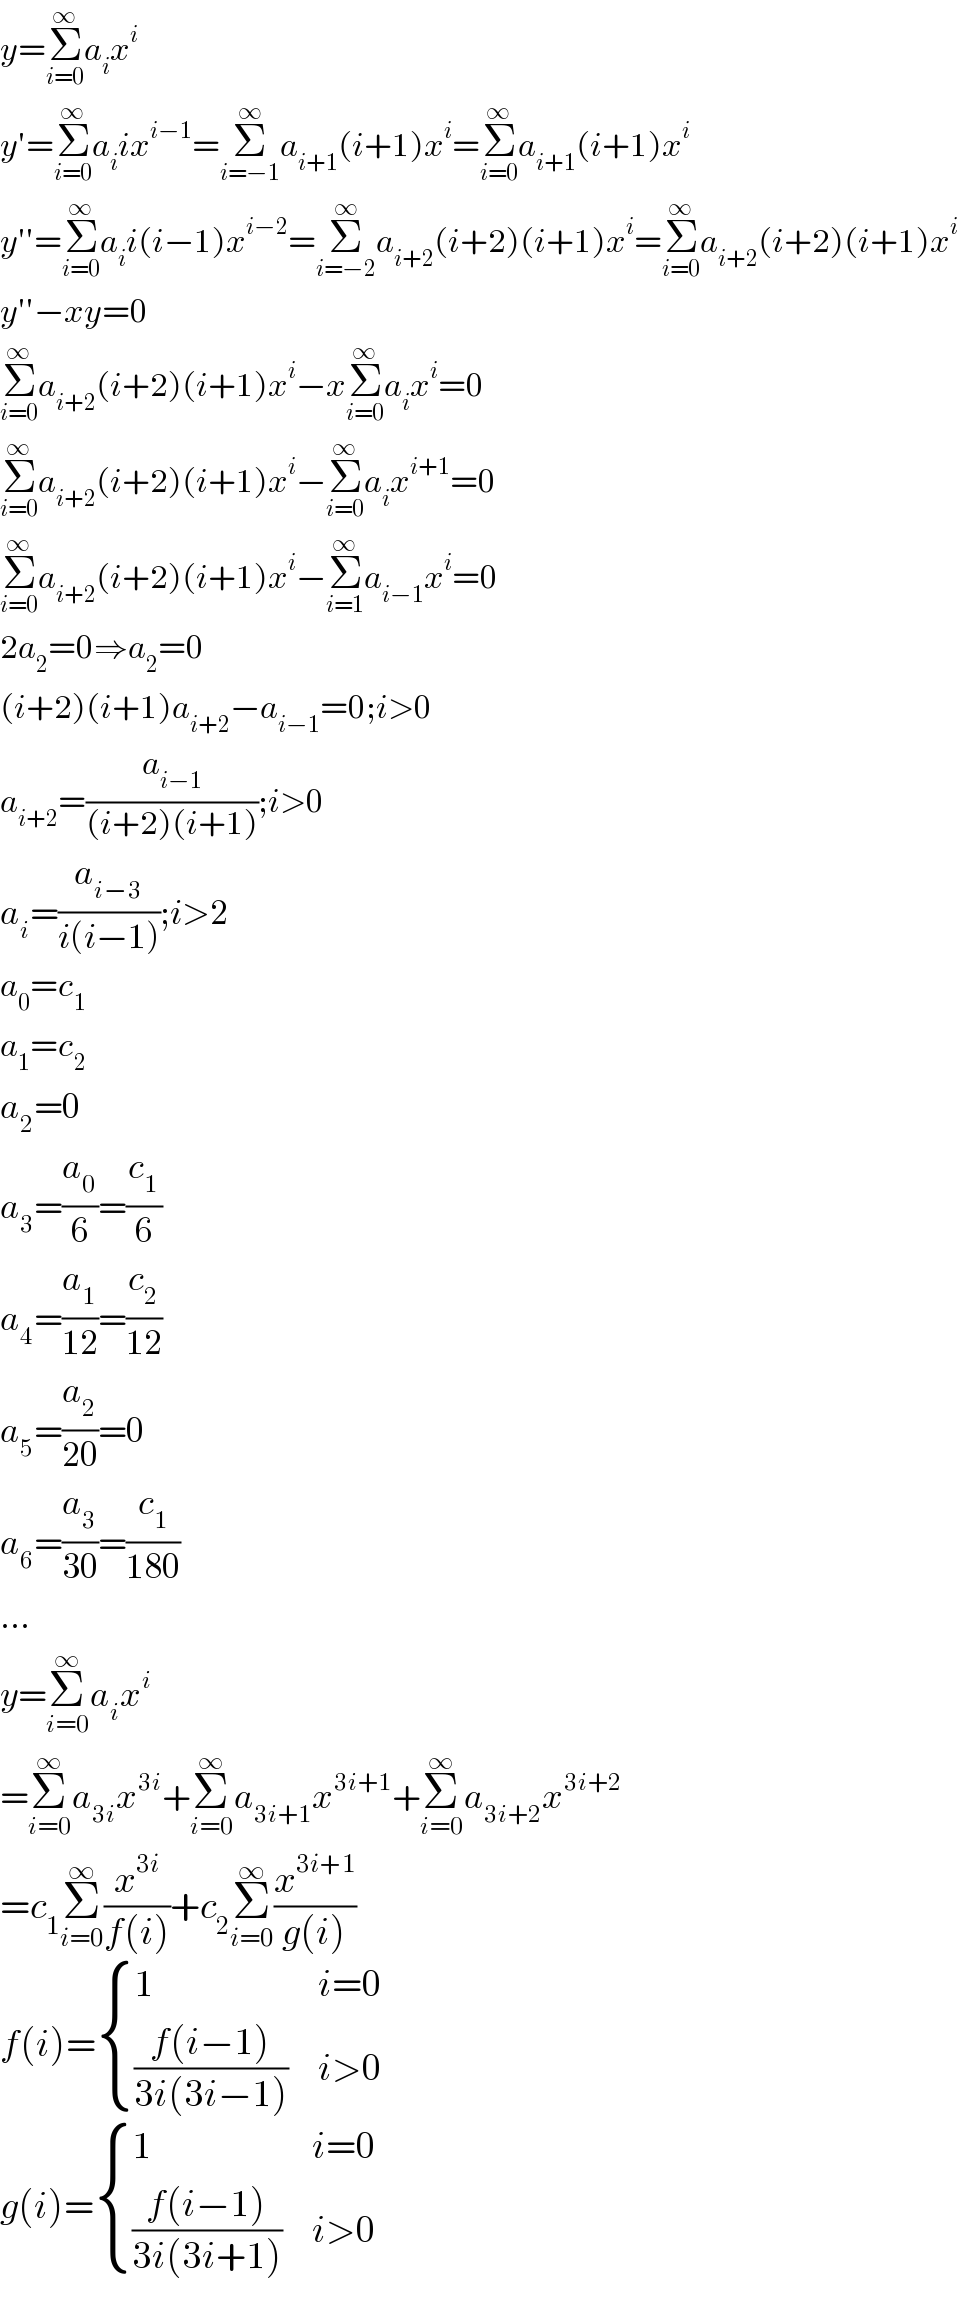 y=Σ_(i=0) ^∞ a_i x^i   y′=Σ_(i=0) ^∞ a_i ix^(i−1) =Σ_(i=−1) ^∞ a_(i+1) (i+1)x^i =Σ_(i=0) ^∞ a_(i+1) (i+1)x^i   y′′=Σ_(i=0) ^∞ a_i i(i−1)x^(i−2) =Σ_(i=−2) ^∞ a_(i+2) (i+2)(i+1)x^i =Σ_(i=0) ^∞ a_(i+2) (i+2)(i+1)x^i   y′′−xy=0  Σ_(i=0) ^∞ a_(i+2) (i+2)(i+1)x^i −xΣ_(i=0) ^∞ a_i x^i =0  Σ_(i=0) ^∞ a_(i+2) (i+2)(i+1)x^i −Σ_(i=0) ^∞ a_i x^(i+1) =0  Σ_(i=0) ^∞ a_(i+2) (i+2)(i+1)x^i −Σ_(i=1) ^∞ a_(i−1) x^i =0  2a_2 =0⇒a_2 =0  (i+2)(i+1)a_(i+2) −a_(i−1) =0;i>0  a_(i+2) =(a_(i−1) /((i+2)(i+1)));i>0  a_i =(a_(i−3) /(i(i−1)));i>2  a_0 =c_1   a_1 =c_2   a_2 =0  a_3 =(a_0 /6)=(c_1 /6)  a_4 =(a_1 /(12))=(c_2 /(12))  a_5 =(a_2 /(20))=0  a_6 =(a_3 /(30))=(c_1 /(180))  ...  y=Σ_(i=0) ^∞ a_i x^i   =Σ_(i=0) ^∞ a_(3i) x^(3i) +Σ_(i=0) ^∞ a_(3i+1) x^(3i+1) +Σ_(i=0) ^∞ a_(3i+2) x^(3i+2)   =c_1 Σ_(i=0) ^∞ (x^(3i) /(f(i)))+c_2 Σ_(i=0) ^∞ (x^(3i+1) /(g(i)))  f(i)= { (1,(i=0)),(((f(i−1))/(3i(3i−1))),(i>0)) :}  g(i)= { (1,(i=0)),(((f(i−1))/(3i(3i+1))),(i>0)) :}  